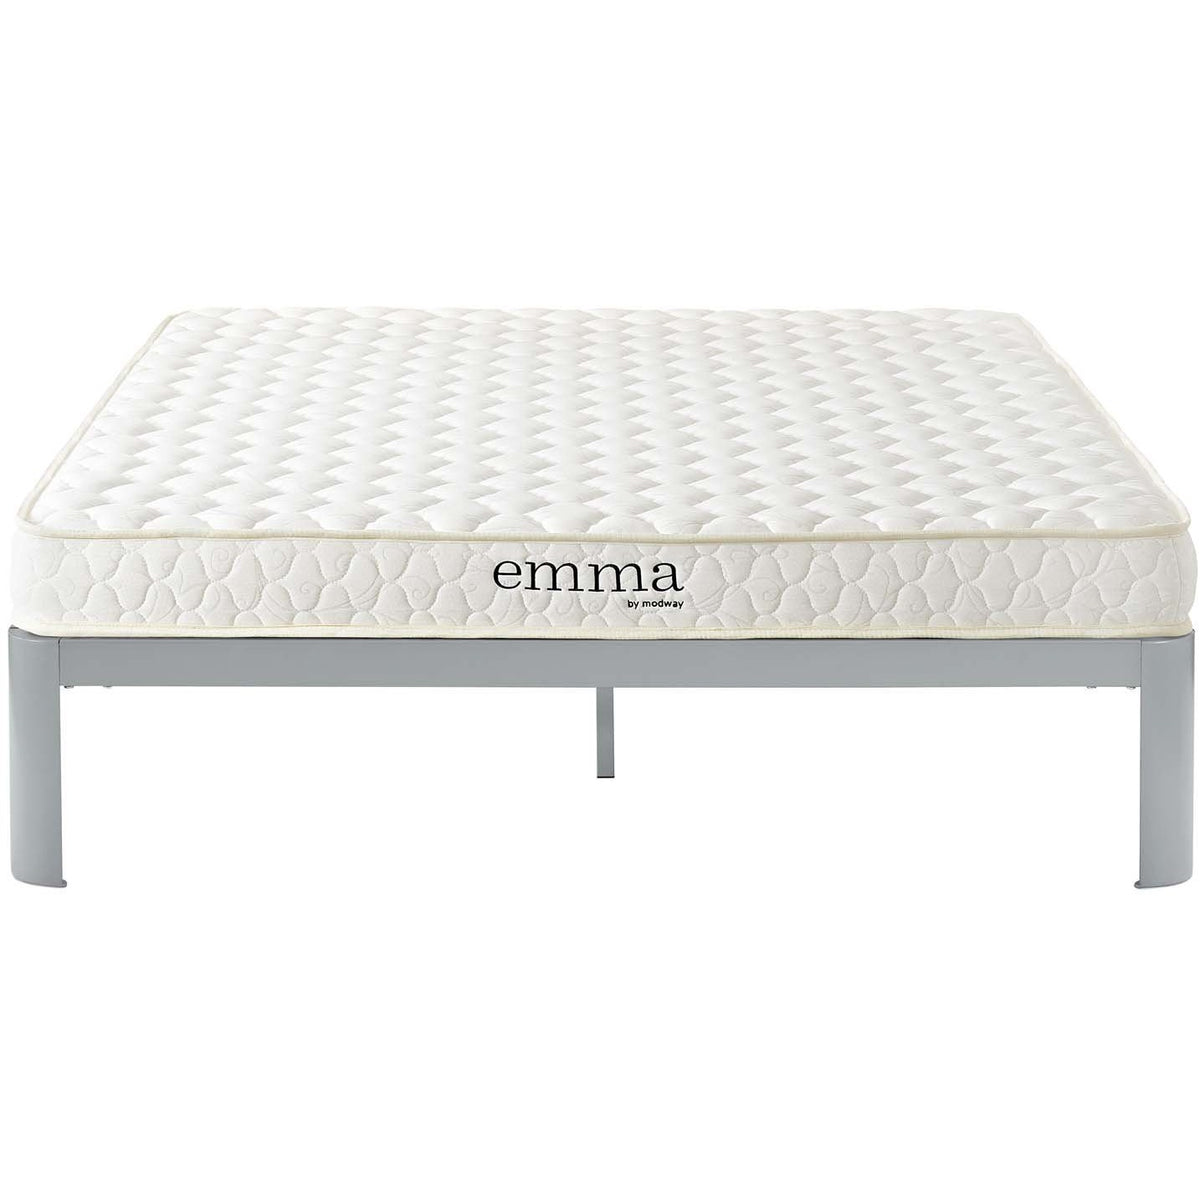 Modway Furniture Modern Emma 6" Queen Mattress - MOD-5735-Minimal & Modern